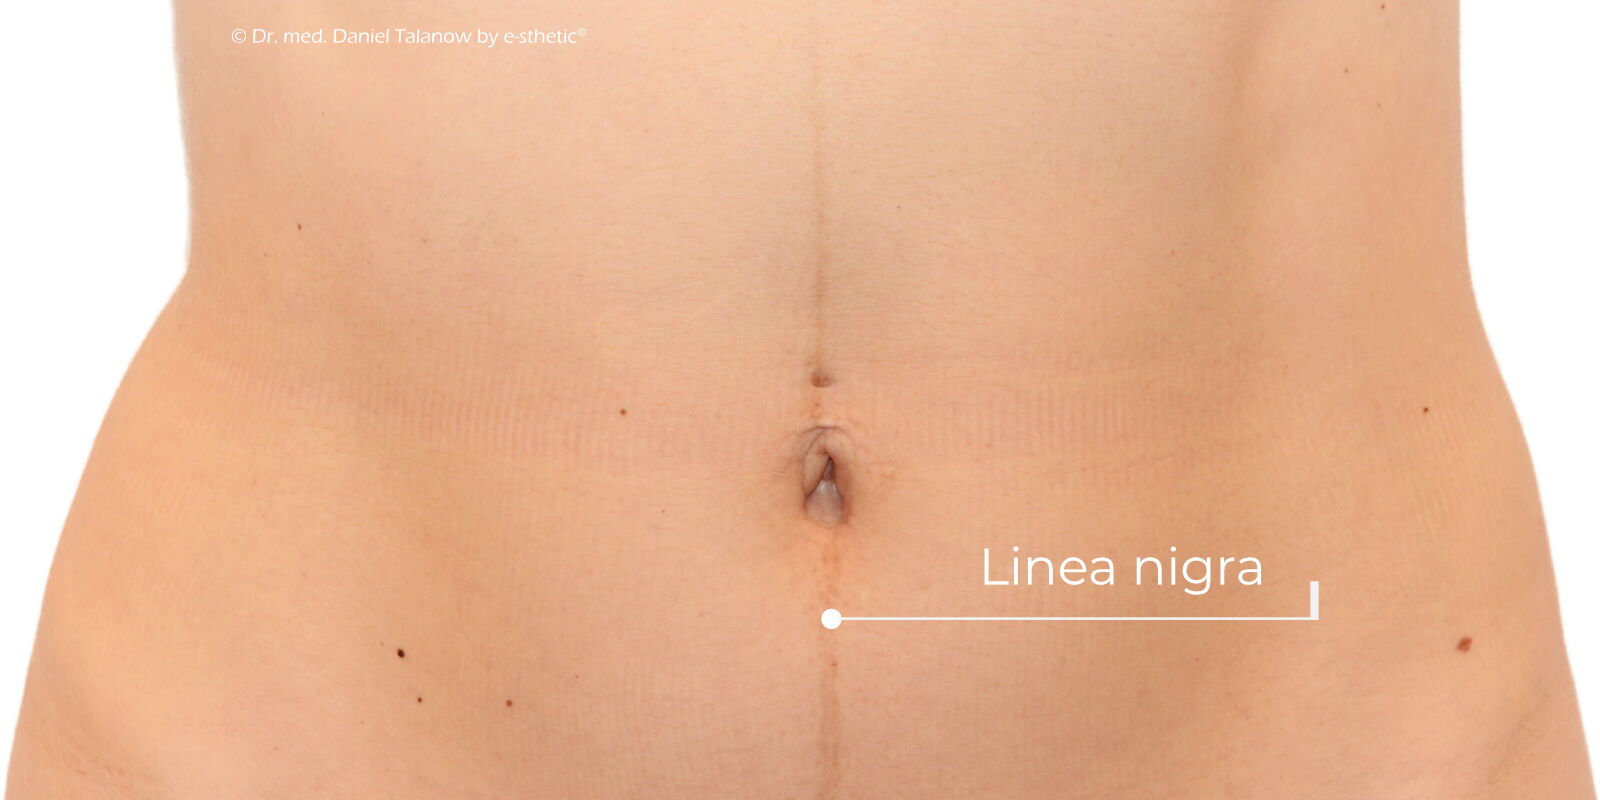 Während der Schwangerschaft kann es durch Hormonumstellungen lokal an der Bauchwand zu einer senkrecht ausgerichteten und pigmentierten Linie kommen, welche als Linea nigra bezeichnet wird